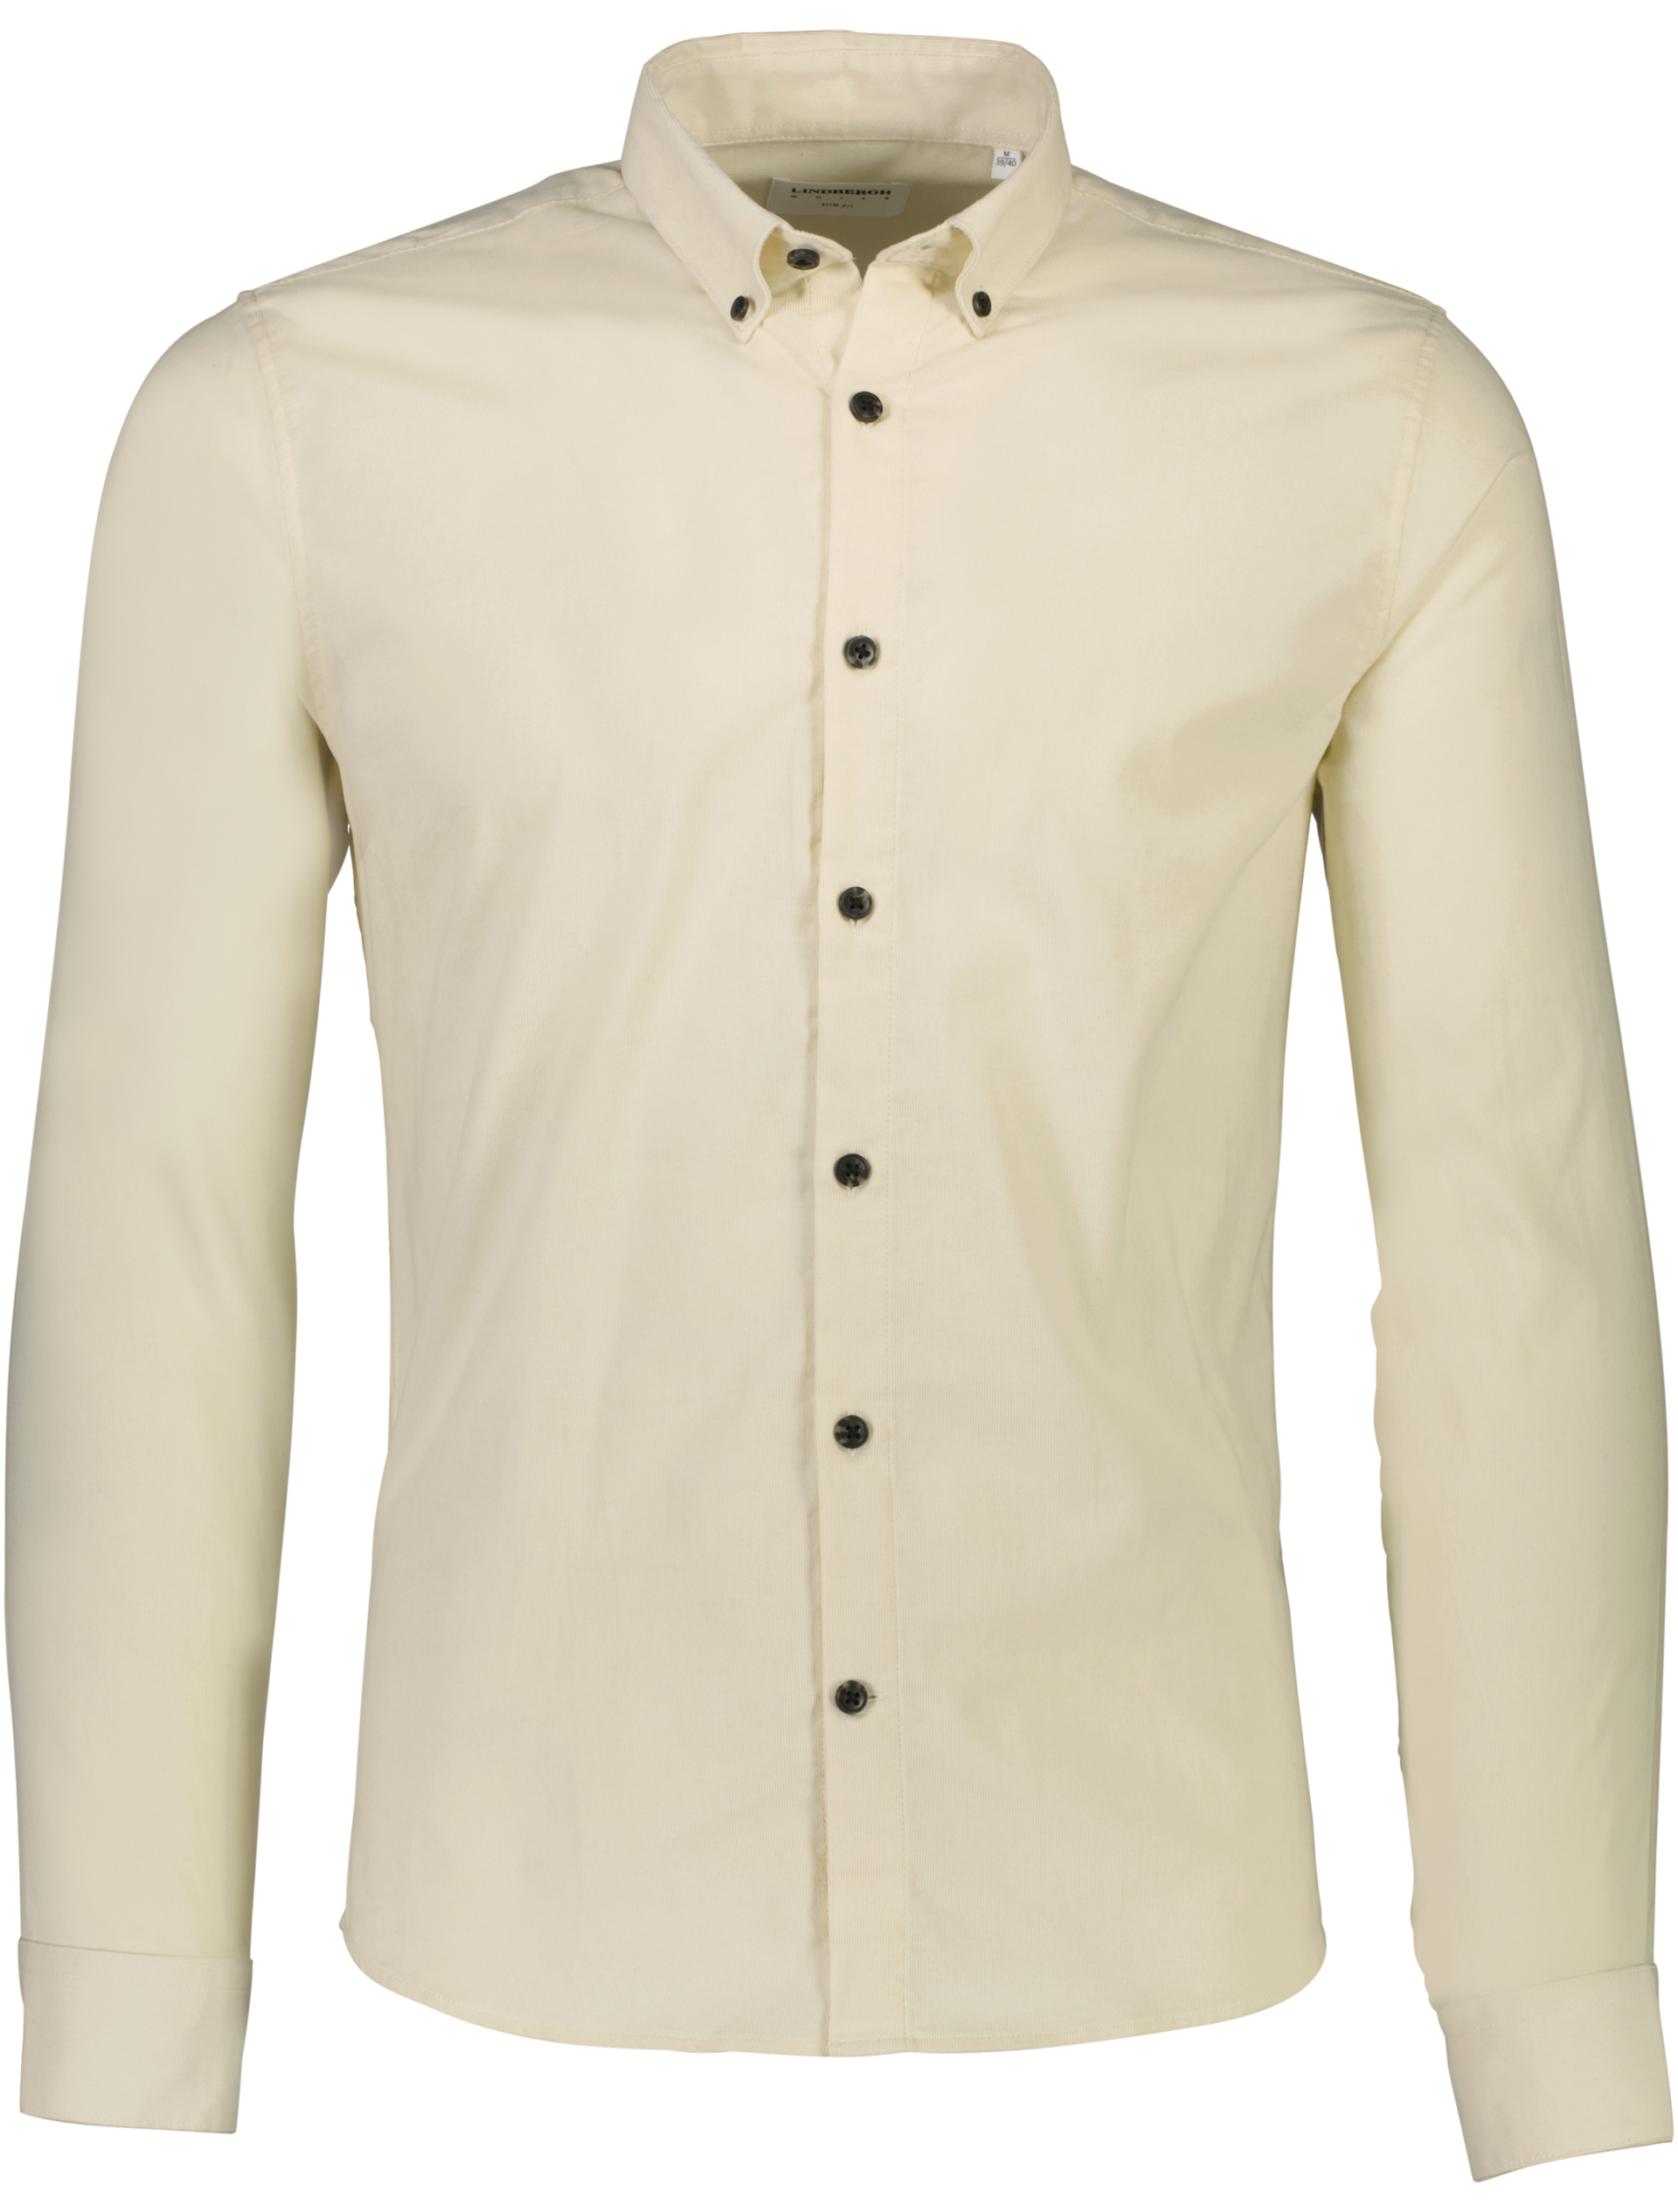 Lindbergh Fløjlsskjorte hvid / cream white